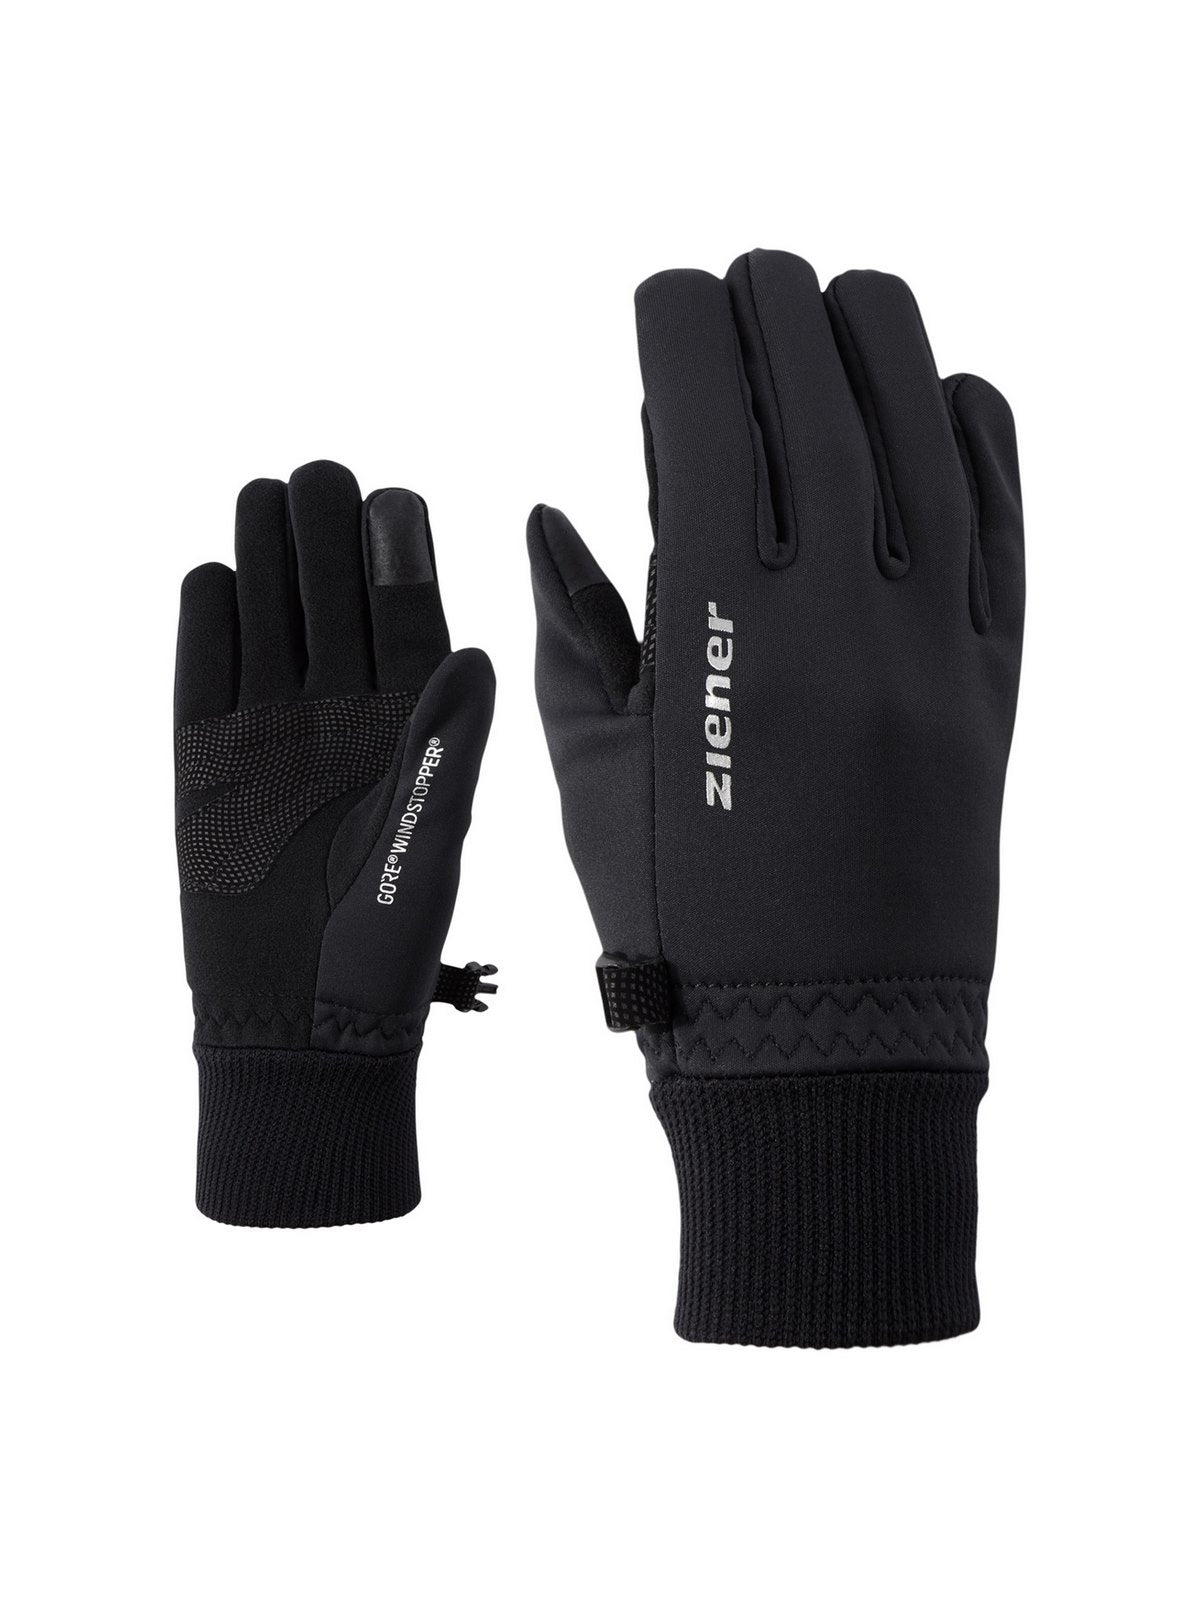 Rękawice narciarskie ZIENER LIDEALIST GTX INF TOUCH JUNIOR Glove Multisport